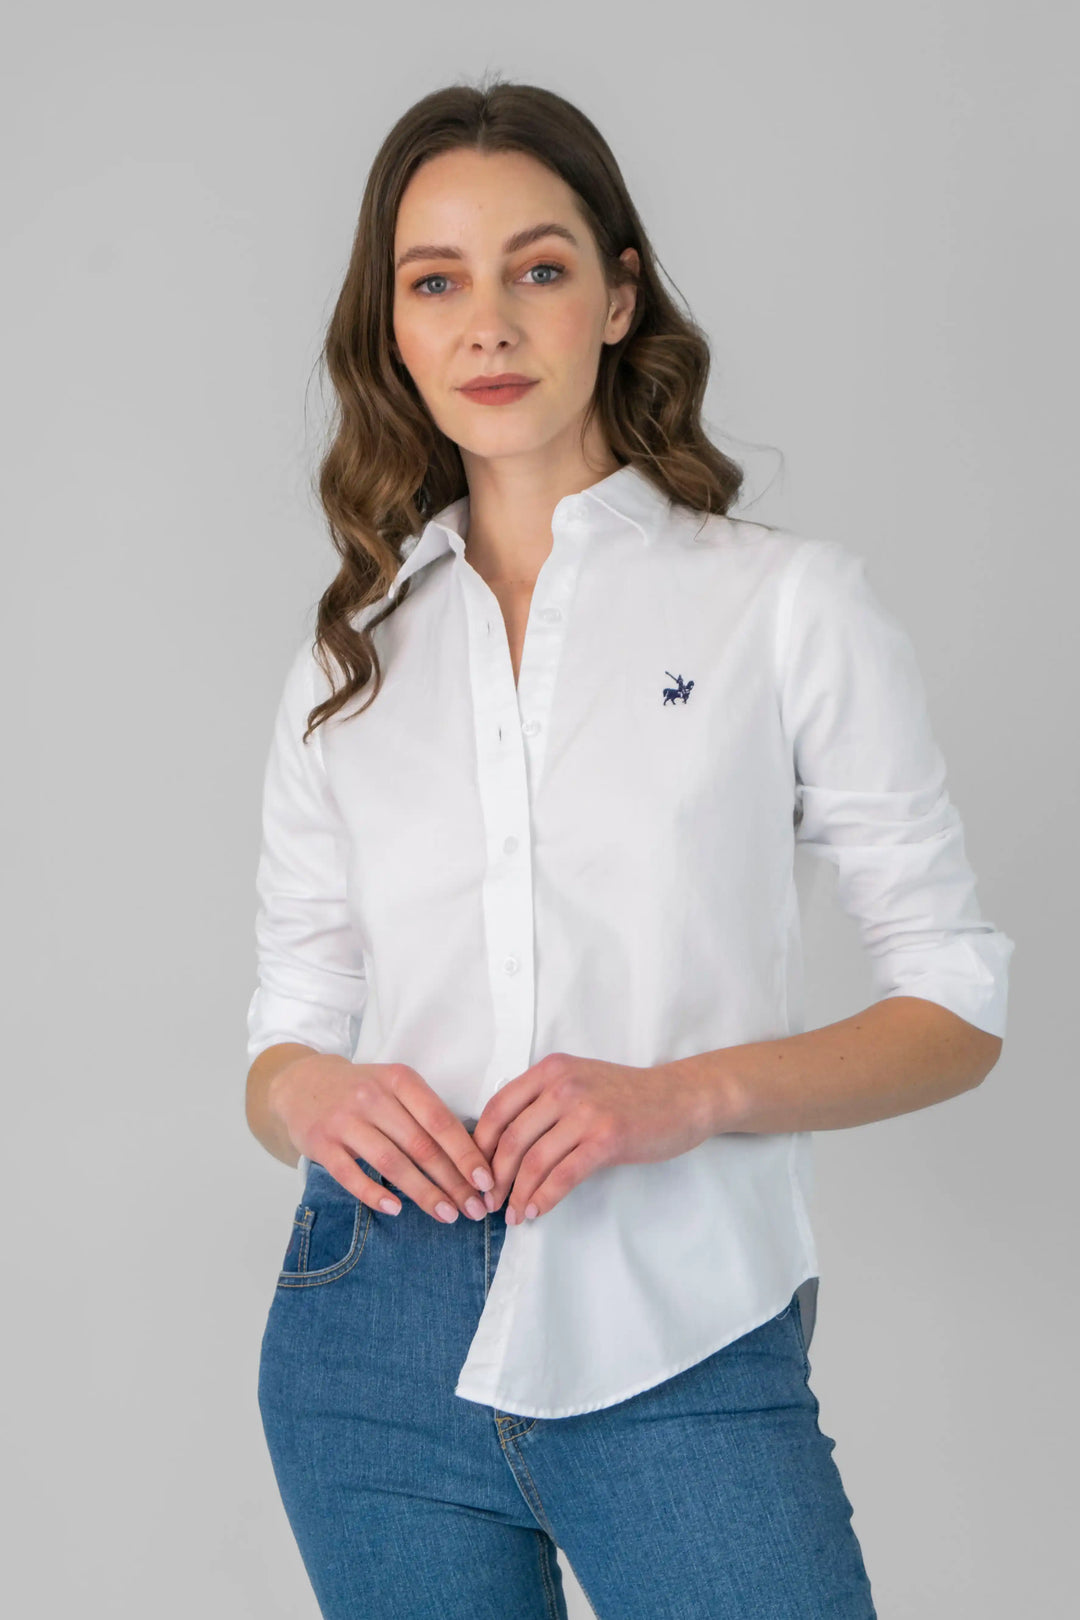 Camisa blanca Oxford Mujer de Armatura, de corte clásico y manga larga. Fabricada en algodón 100% con un acabado suave y transpirable. Ideal para looks formales e informales